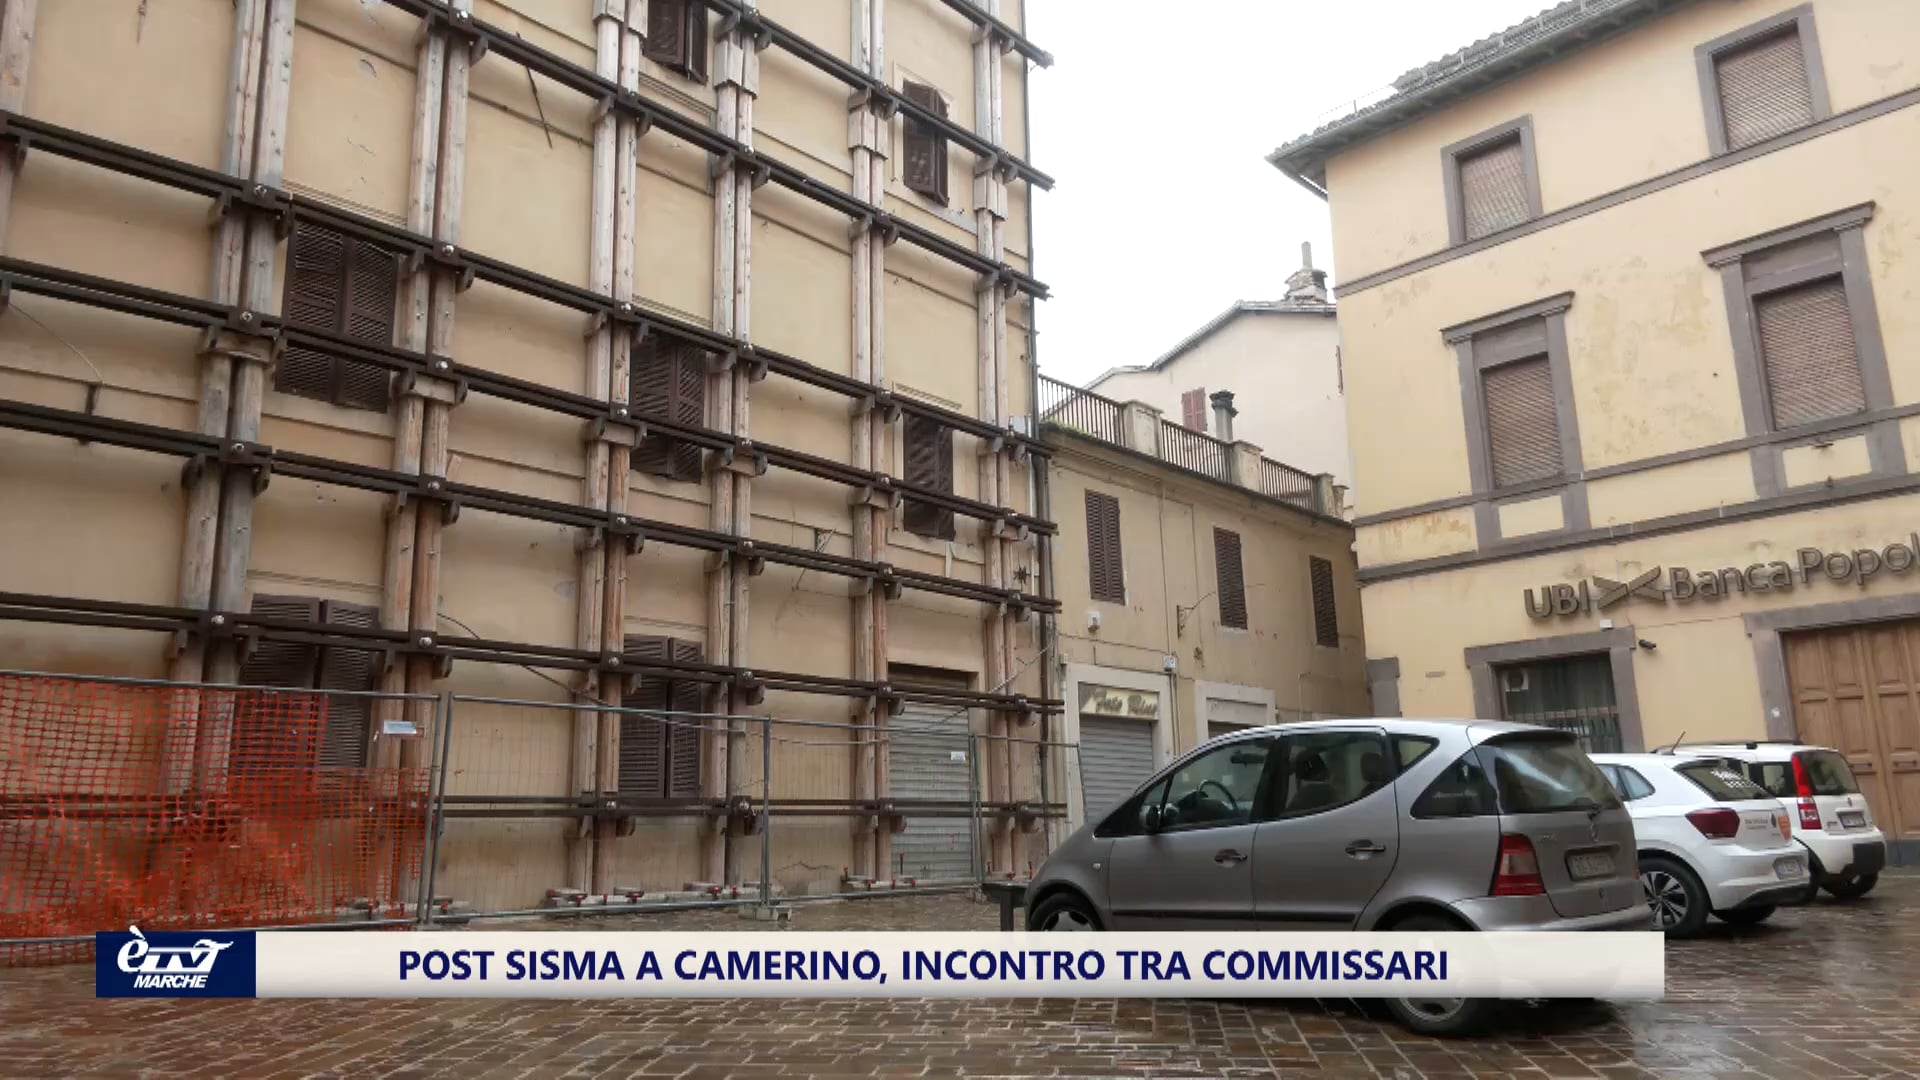 Il post sisma di Camerino, incontro tra commissari dopo la sfiducia al sindaco - VIDEO